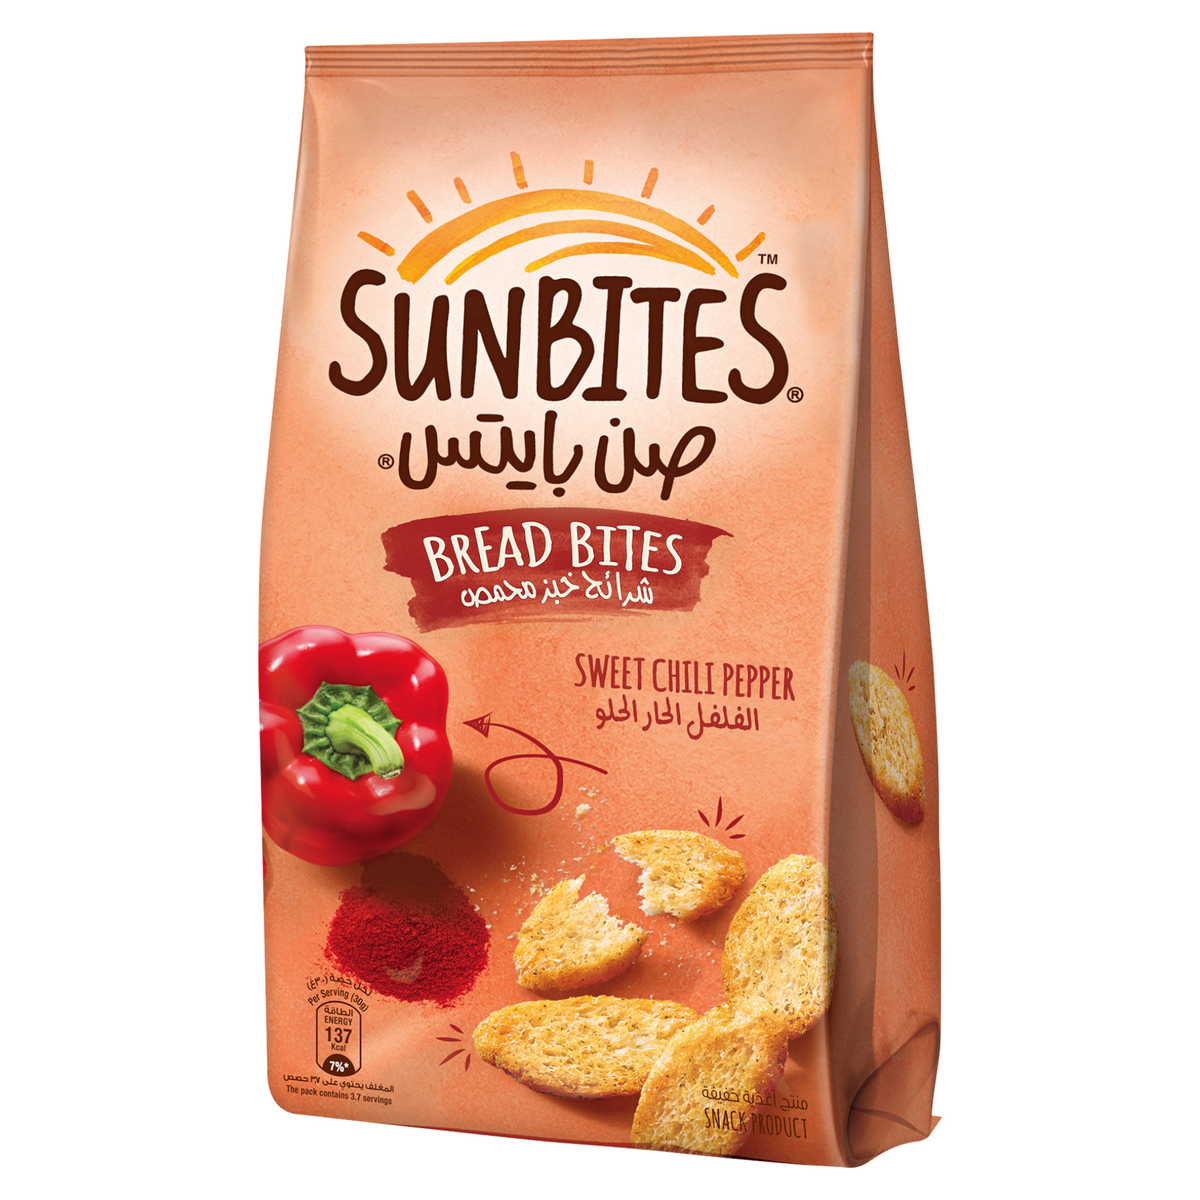 Sunbites Breadbites Sweet Chili Pepper 46g